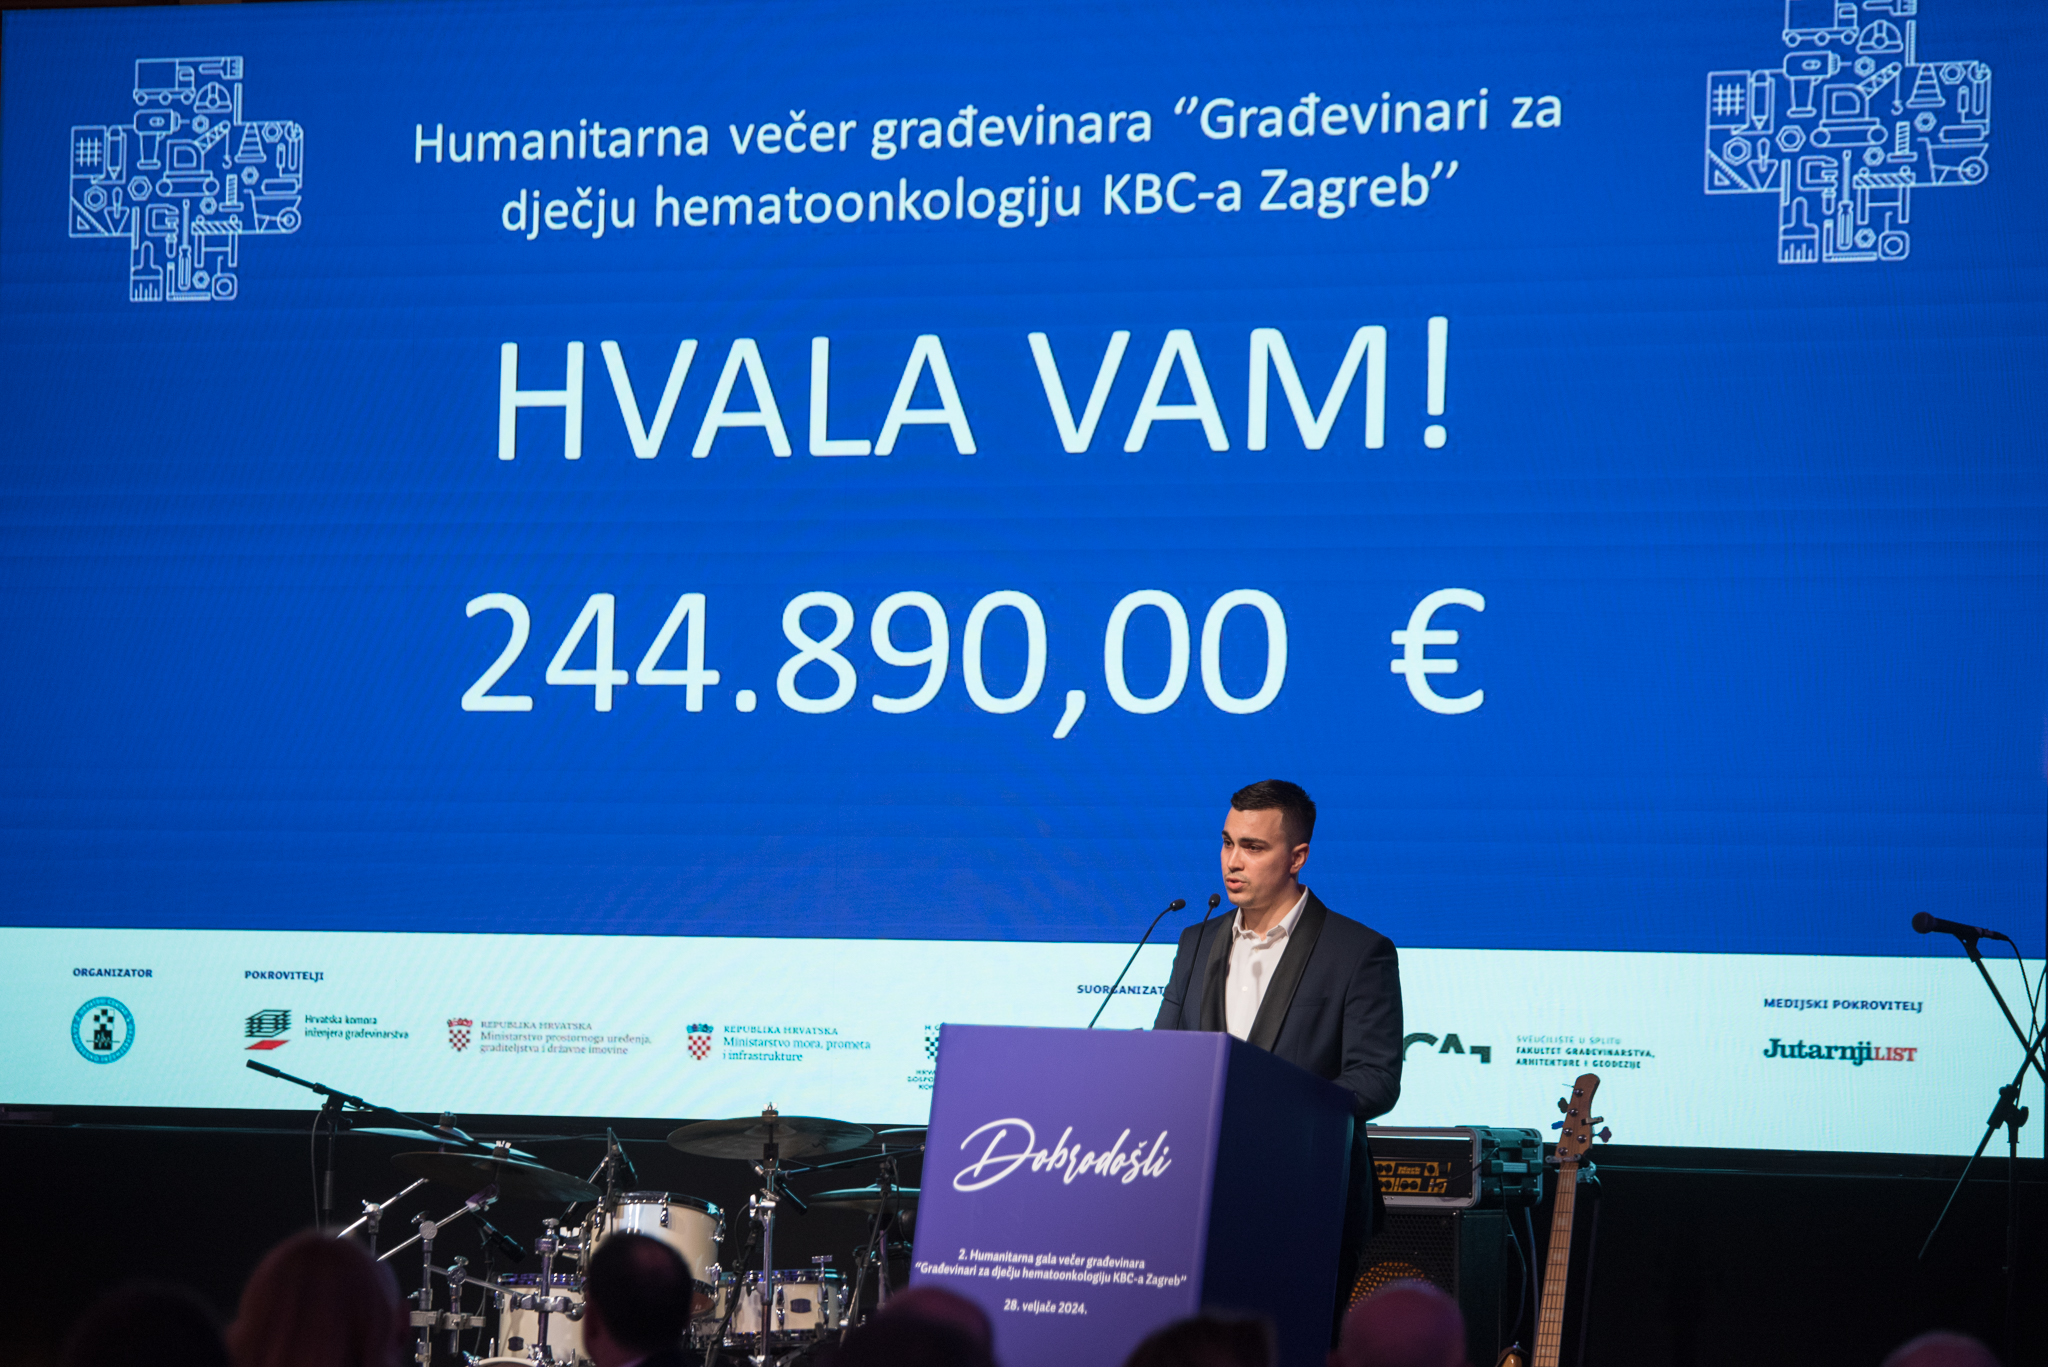 Hrvatski građevinari prikupili su preko 200 tisuća eura za dječju hematoonkologiju KBC-a Zagreb